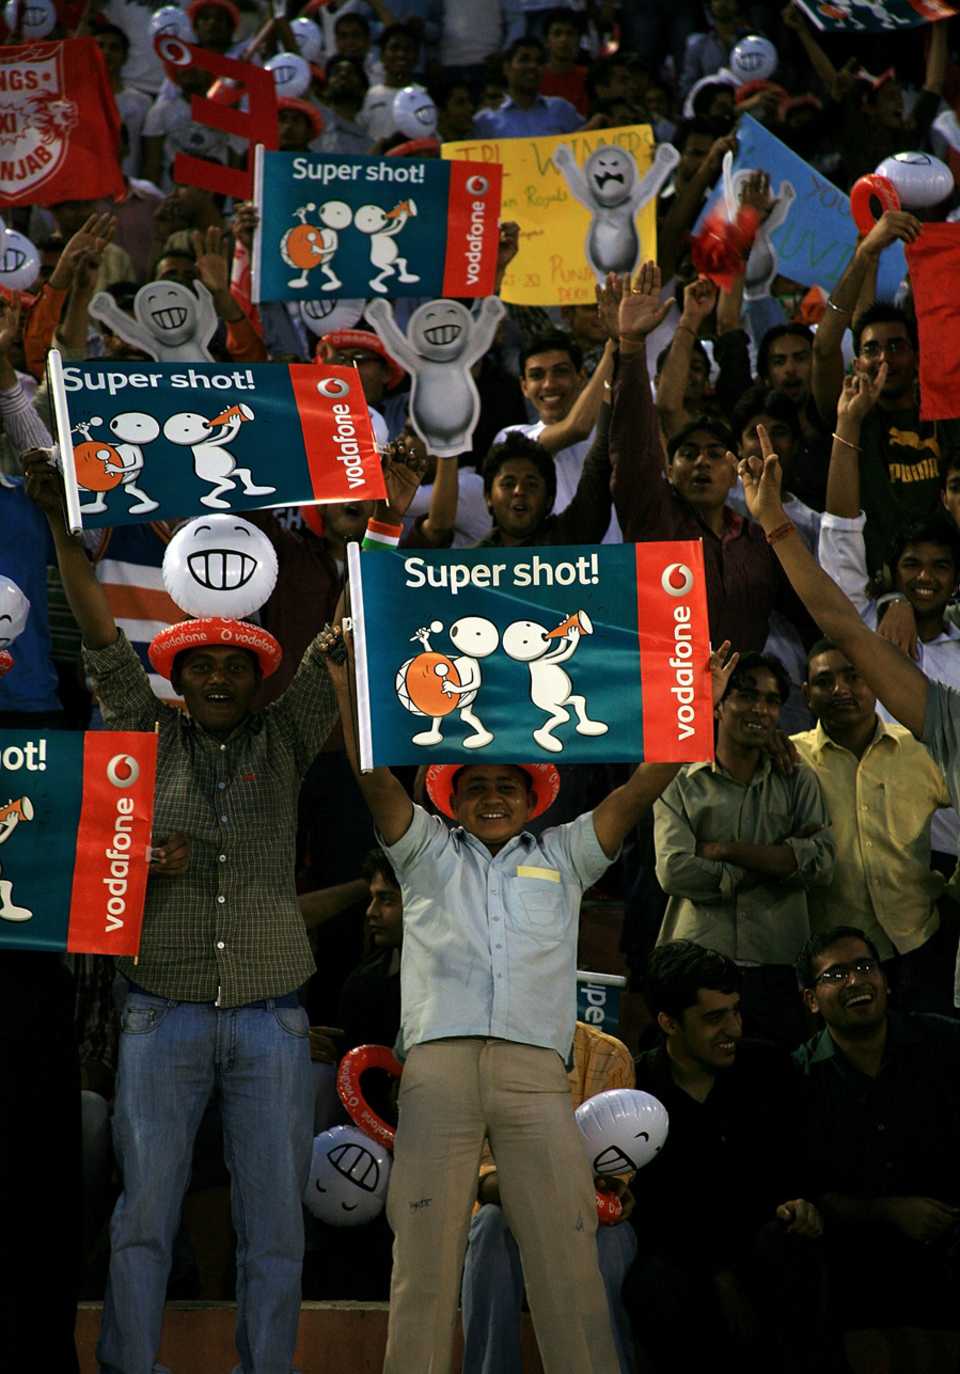 Fans enjoy the game, Kings XI Punjab v Delhi Daredevils, IPL, Mohali, March 13, 2010